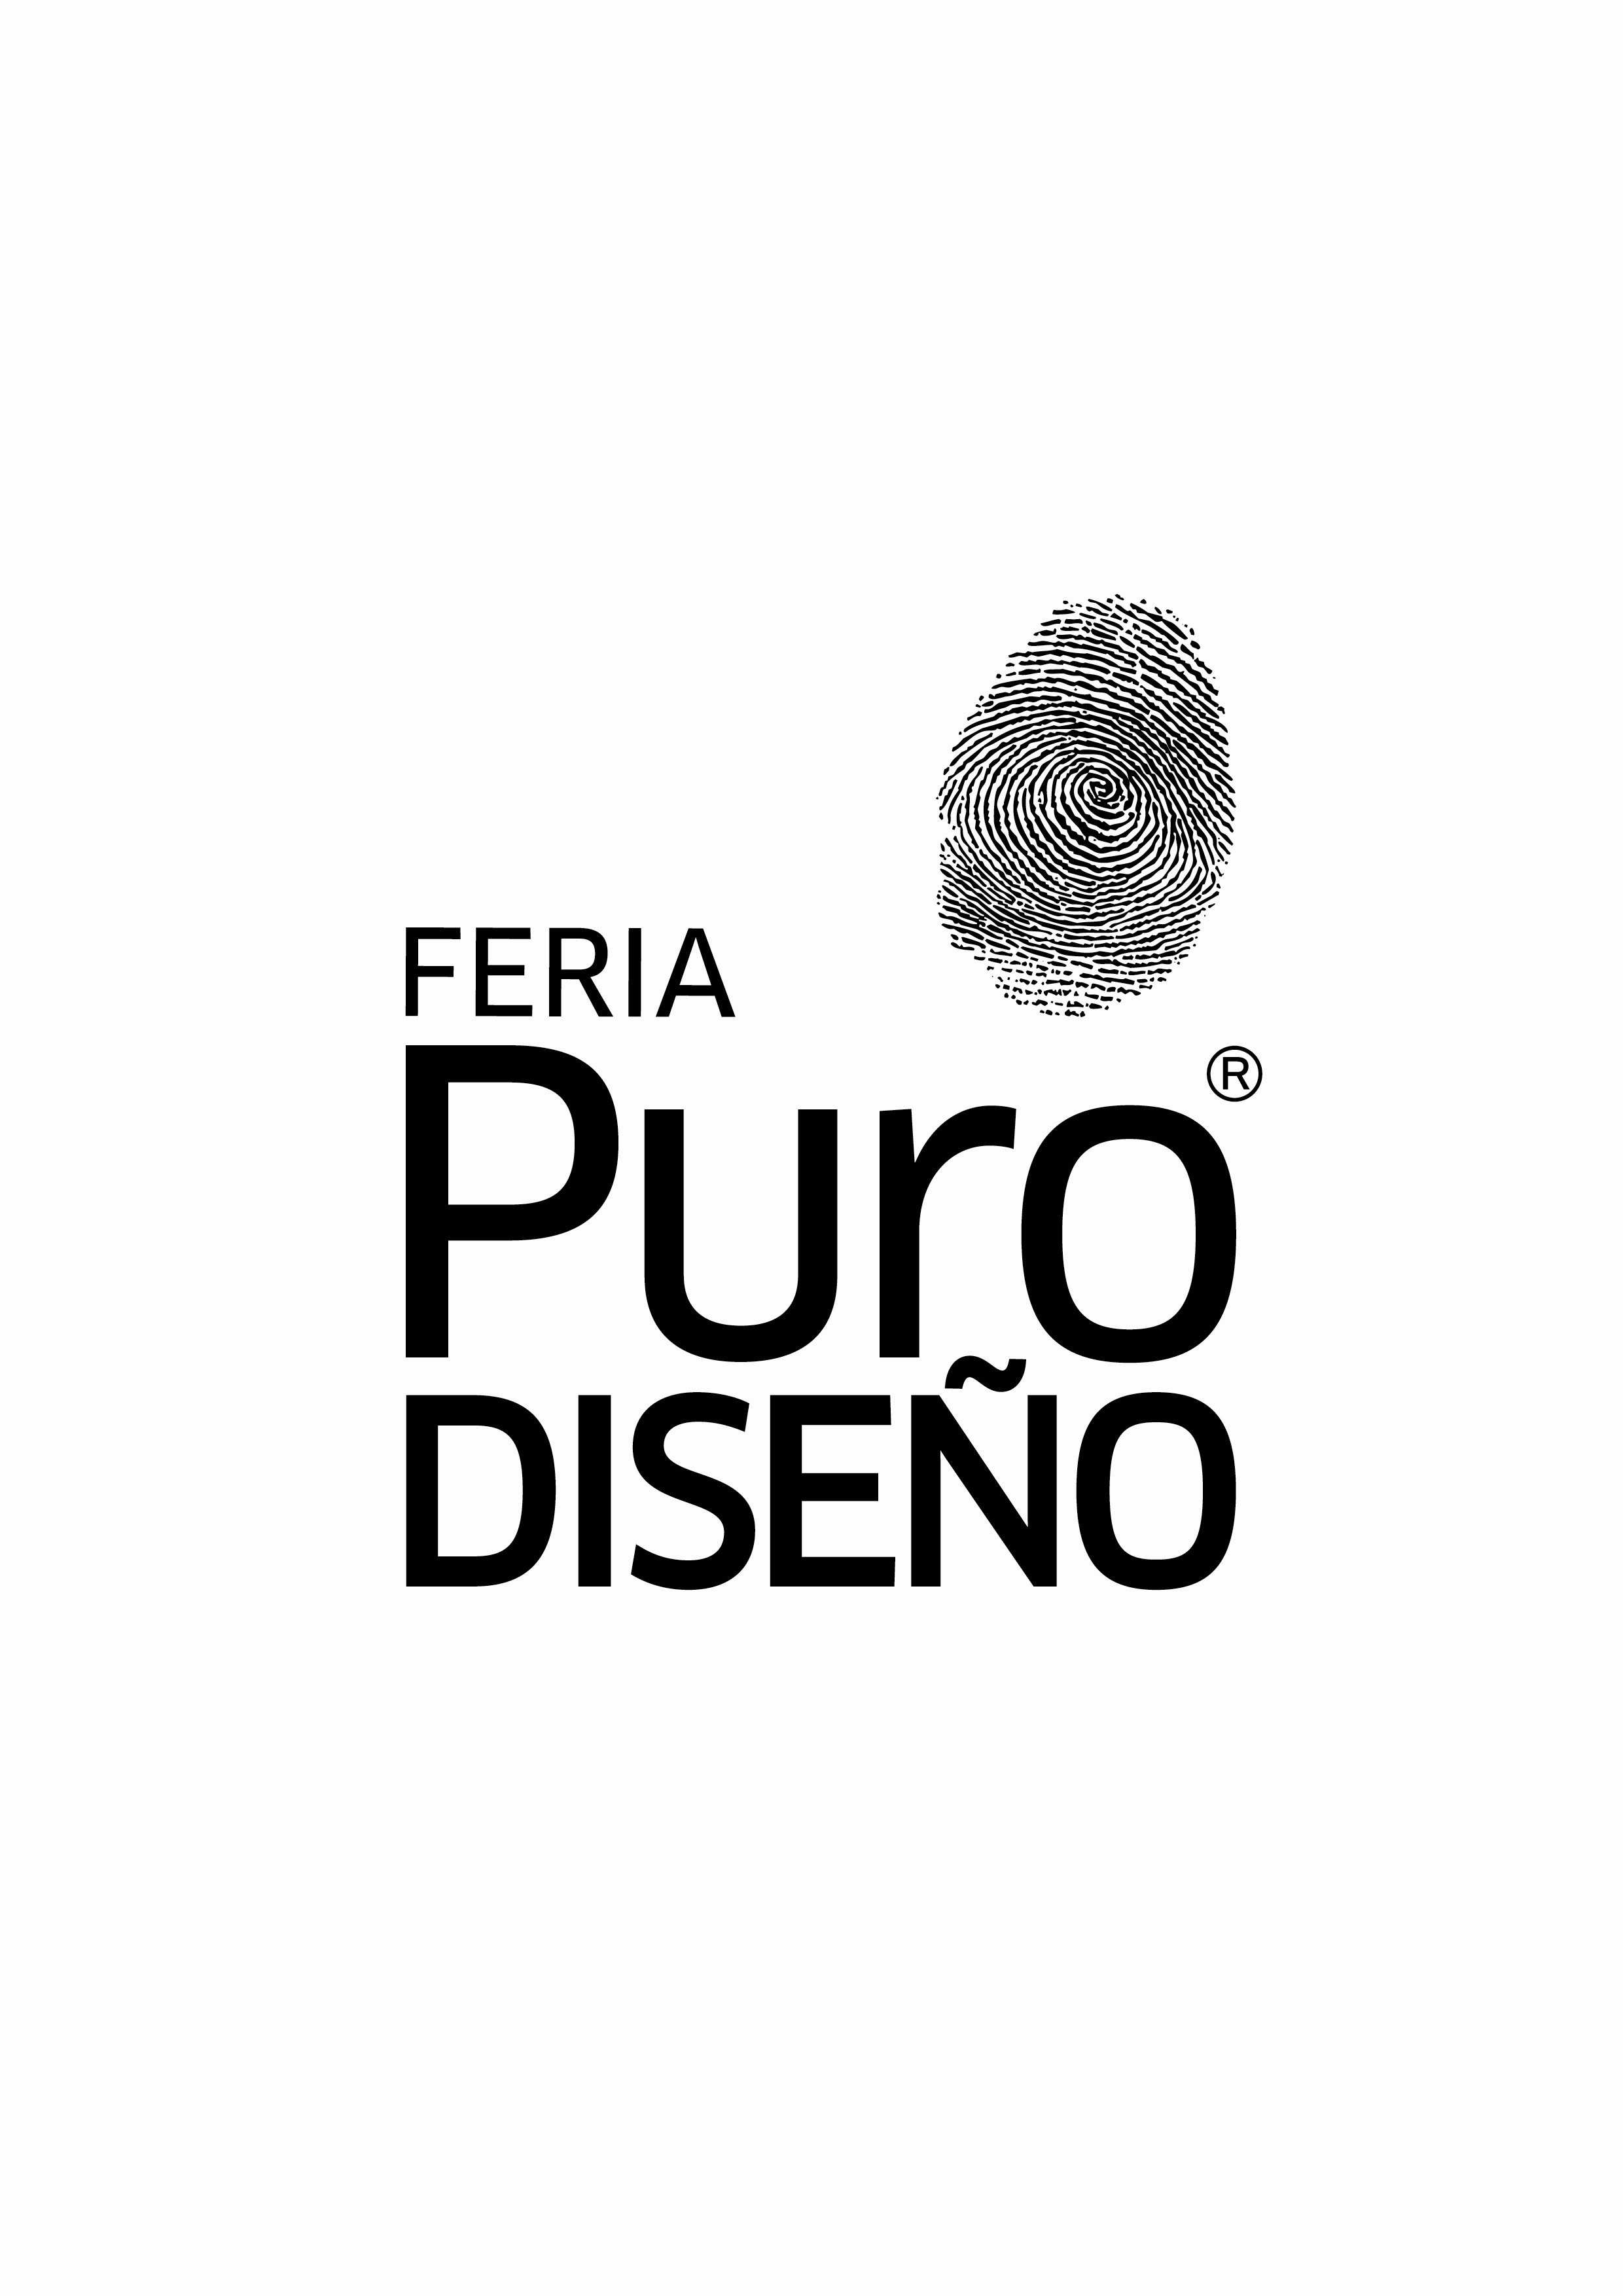 “13° RONDA DE NEGOCIOS INTERNACIONAL DE DISEÑO 2017” FERIA